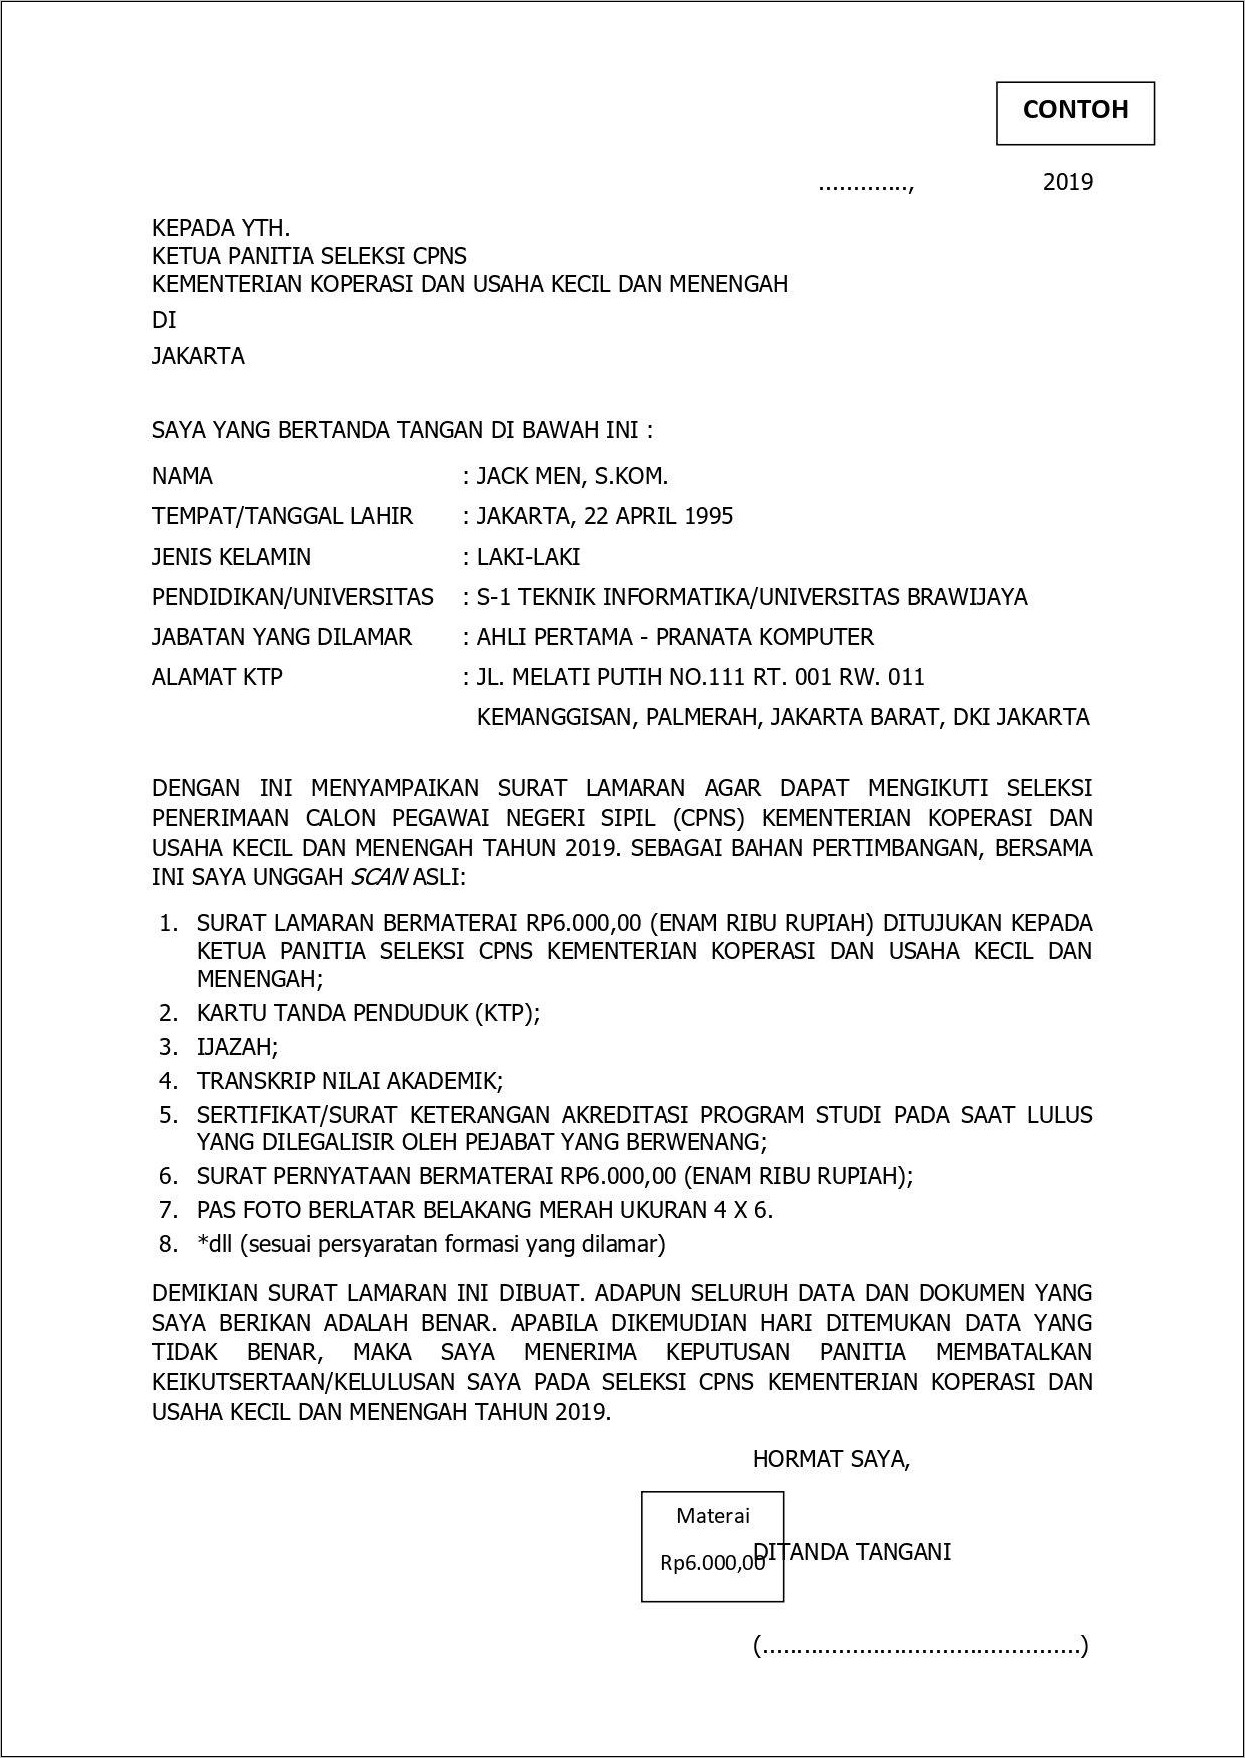 Contoh Format Surat Lamaran Kementerian Ketenagakerjaan Cpns 2019